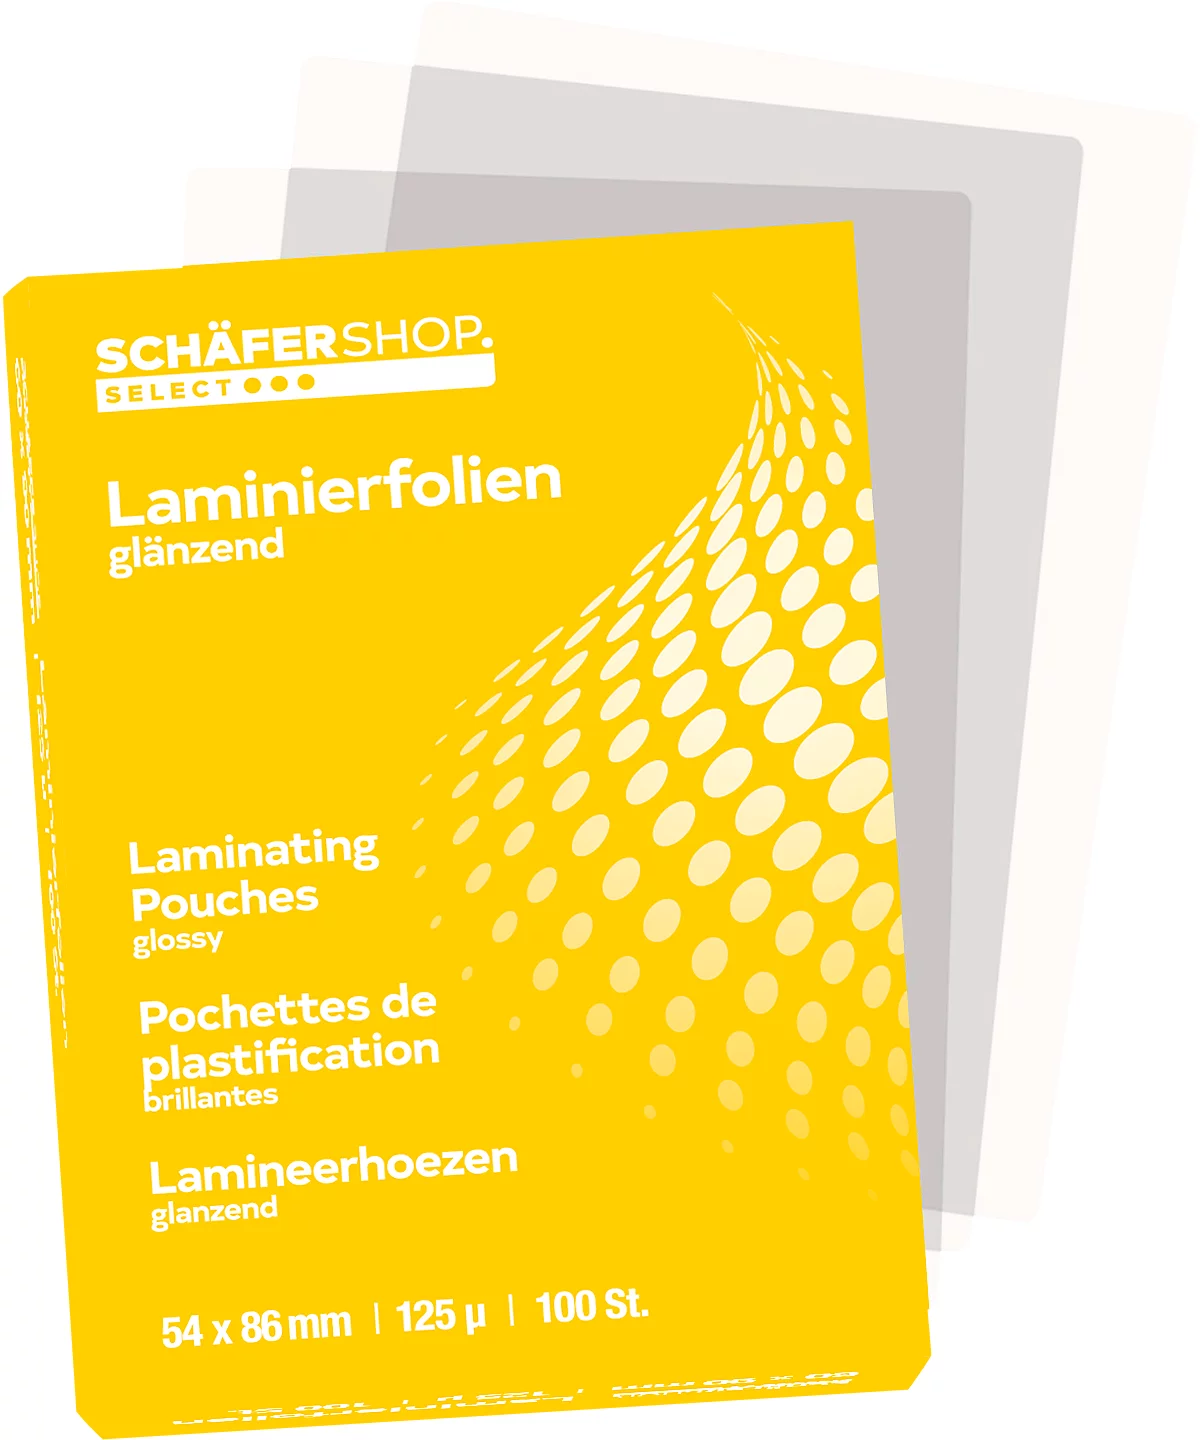 Láminas de plastificación Schäfer Shop Select, 54 x 86 mm para tarjetas de crédito, 125 mic, 100 piezas